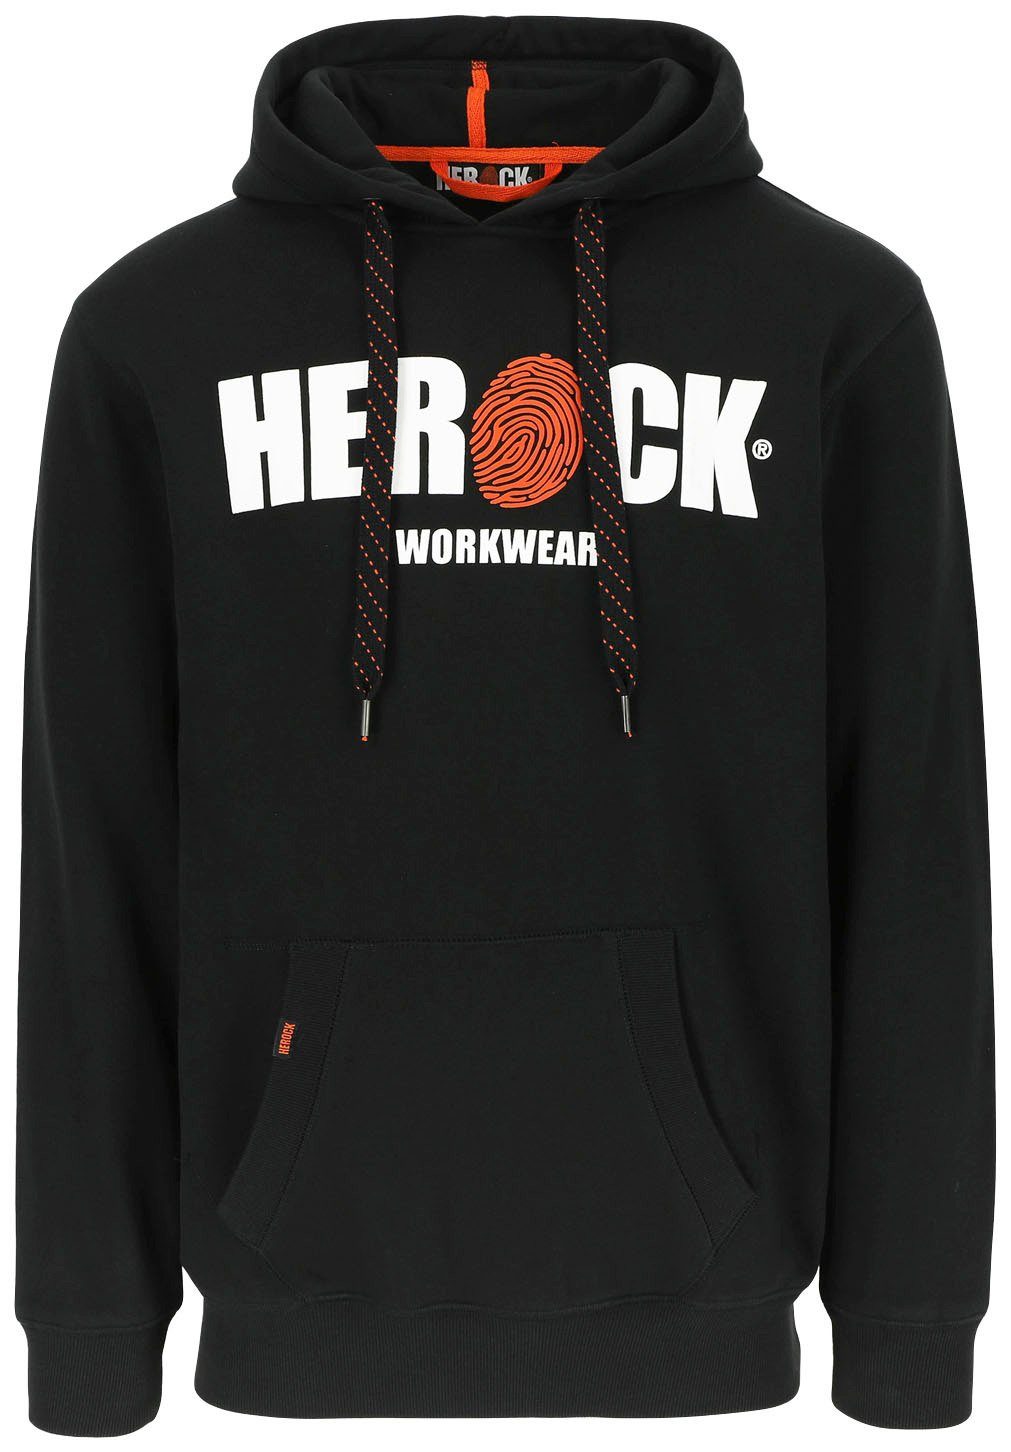 Herock Hoodie HERO Mit Herock®-Aufdruck, Kangurutasche, sehr angenehm und weich schwarz